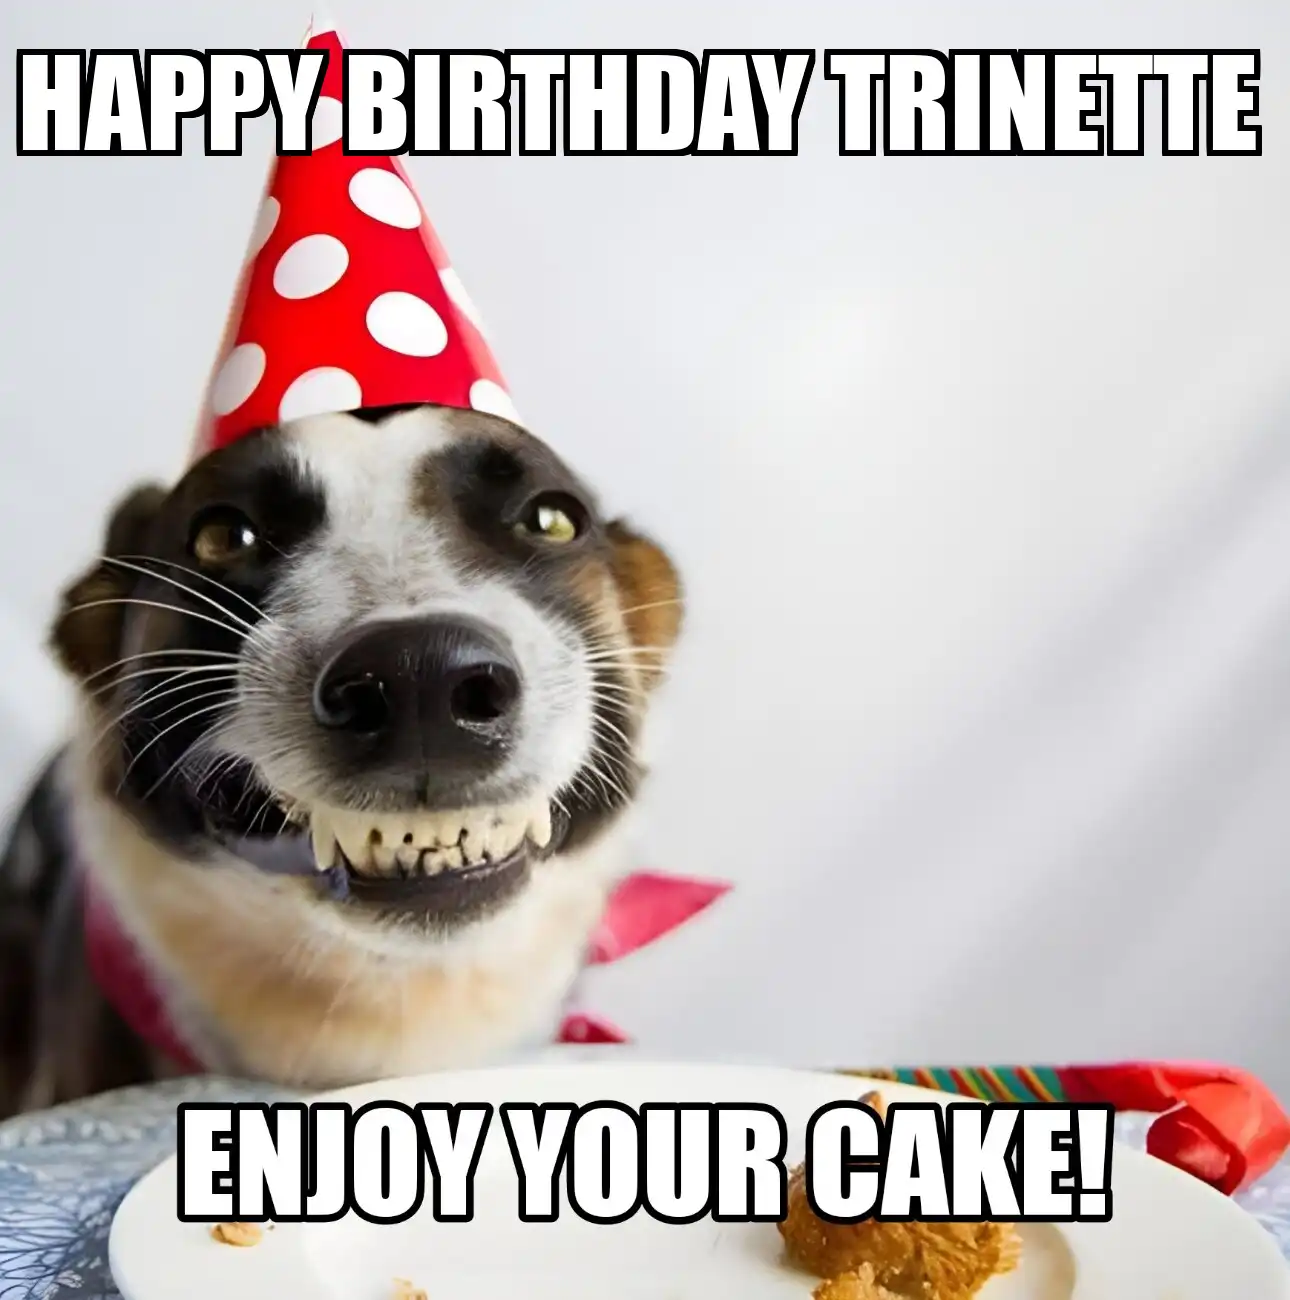 Happy Birthday Trinette Enjoy Your Cake Dog Meme